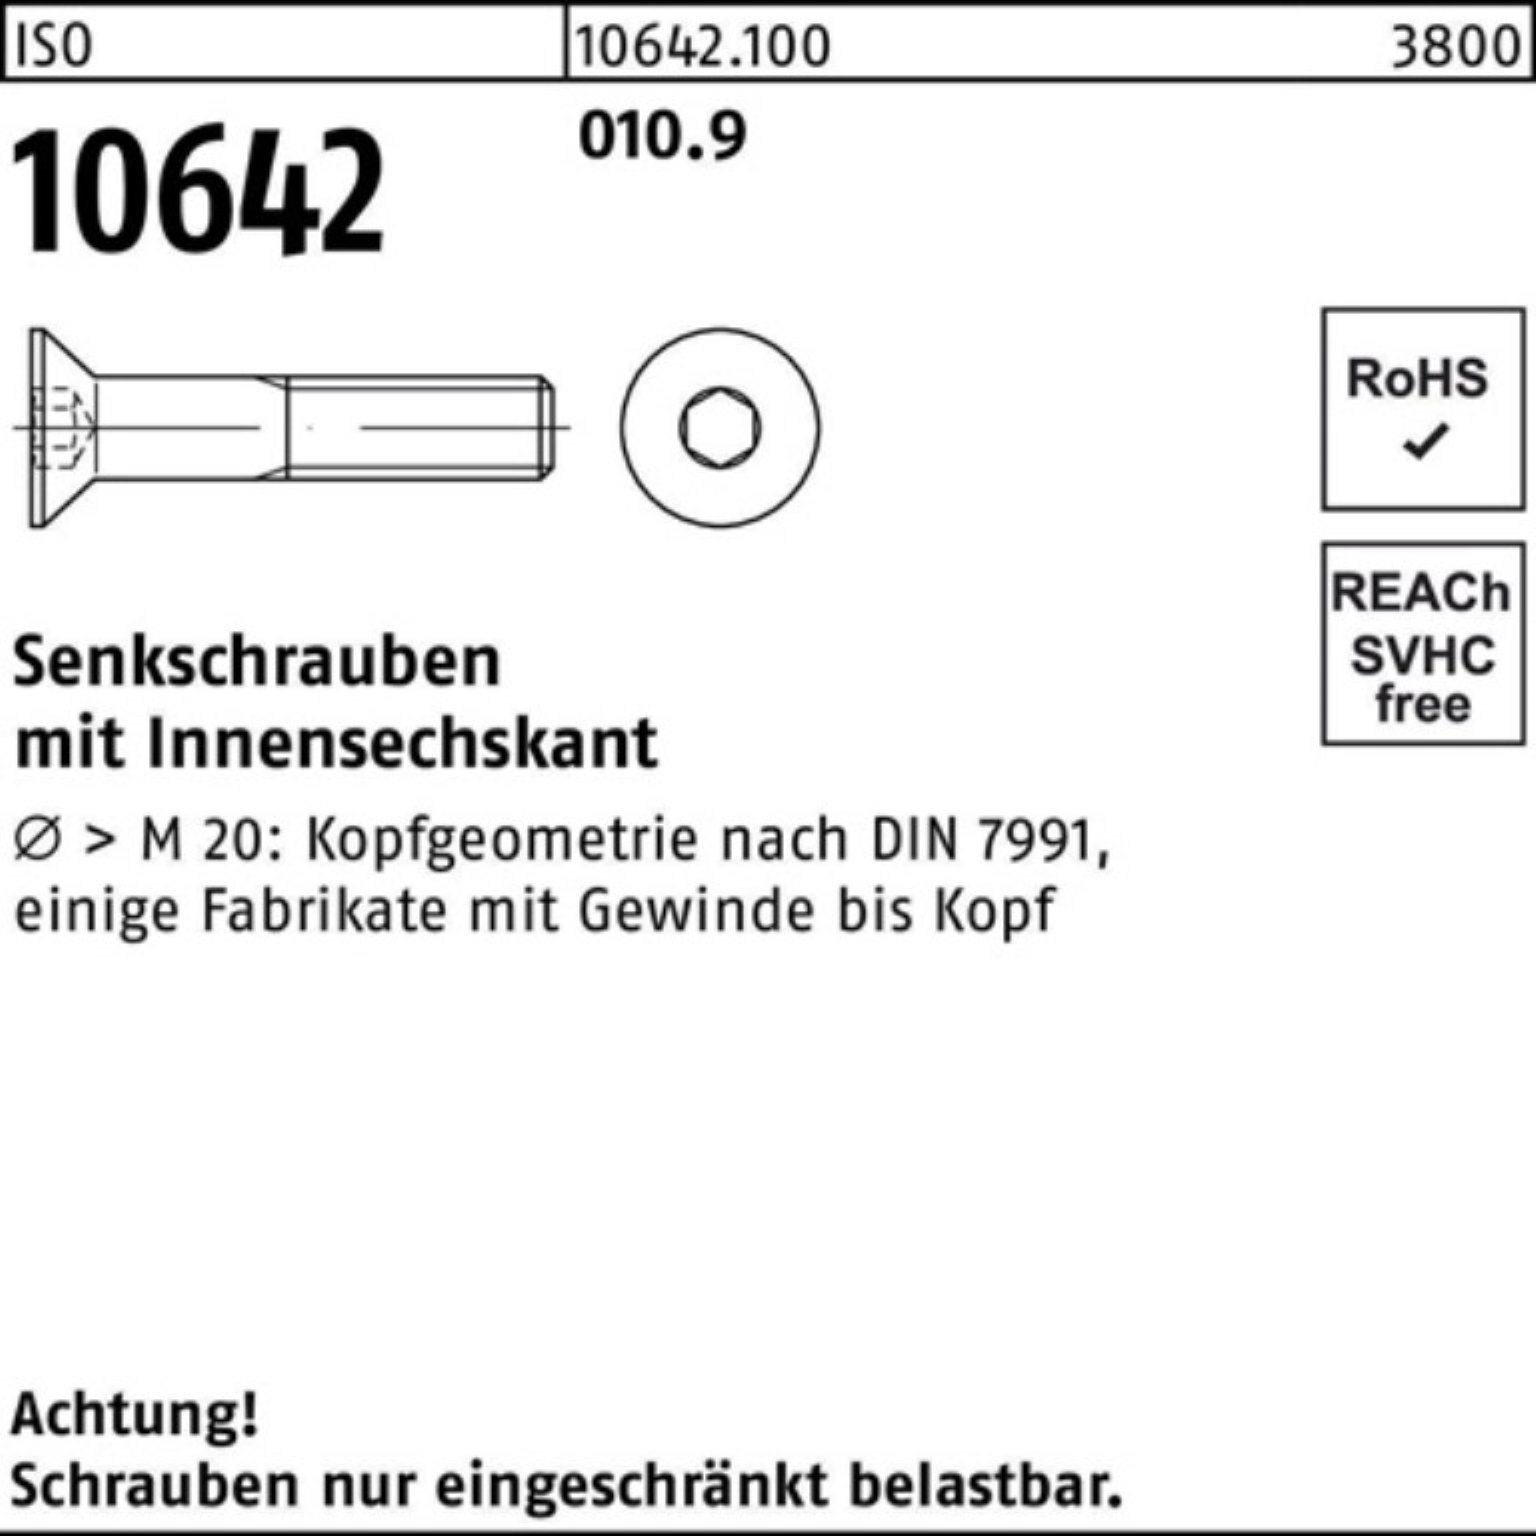 Innen-6kt Senkschraube 1 240 10642 Stück 010.9 ISO M24x 100er IS Reyher Pack Senkschraube